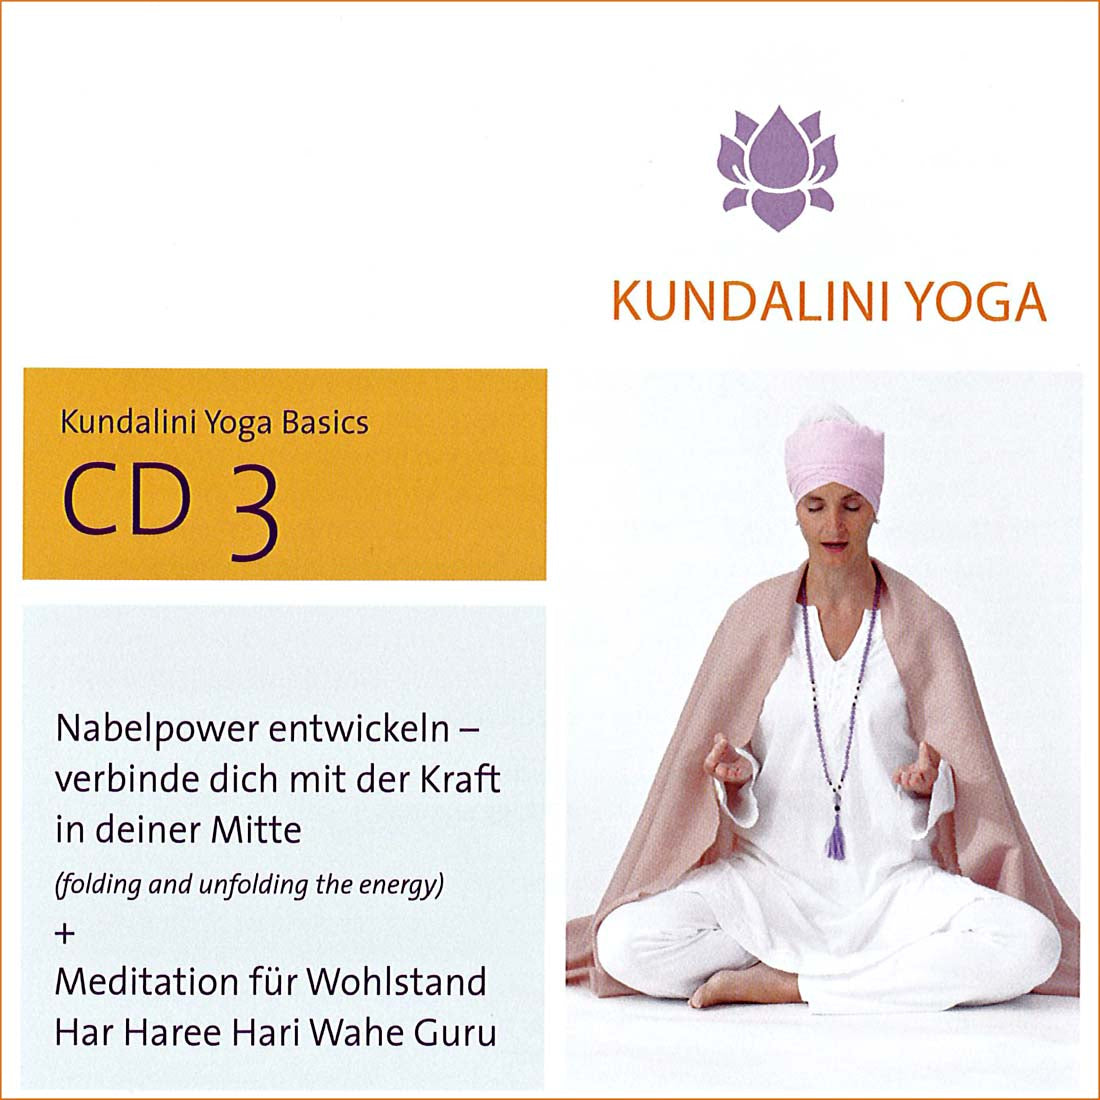 Kundalini Yoga Basics CD 3 - Gurmeet Kaur complet